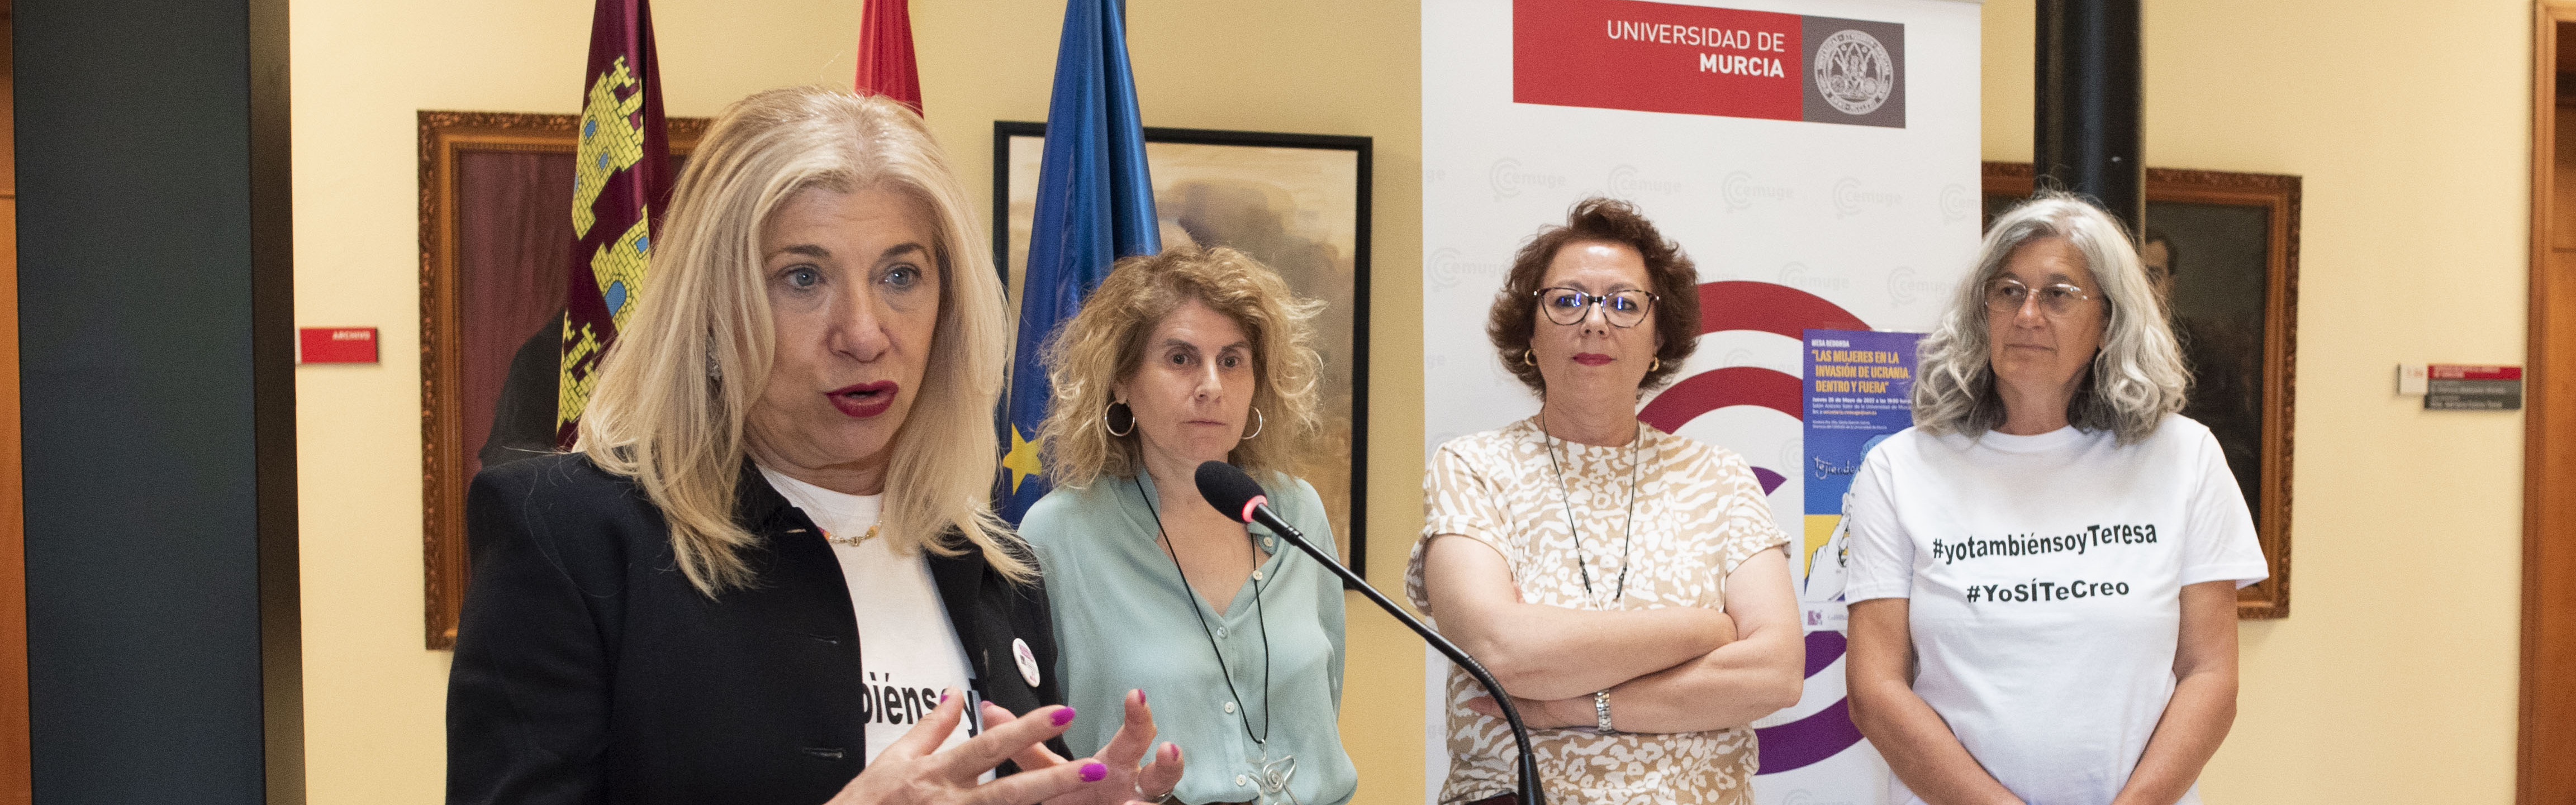 Arranca esta tarde el foro ‘Tejiendo redes feministas’ con una conferencia sobre las mujeres de Ucrania